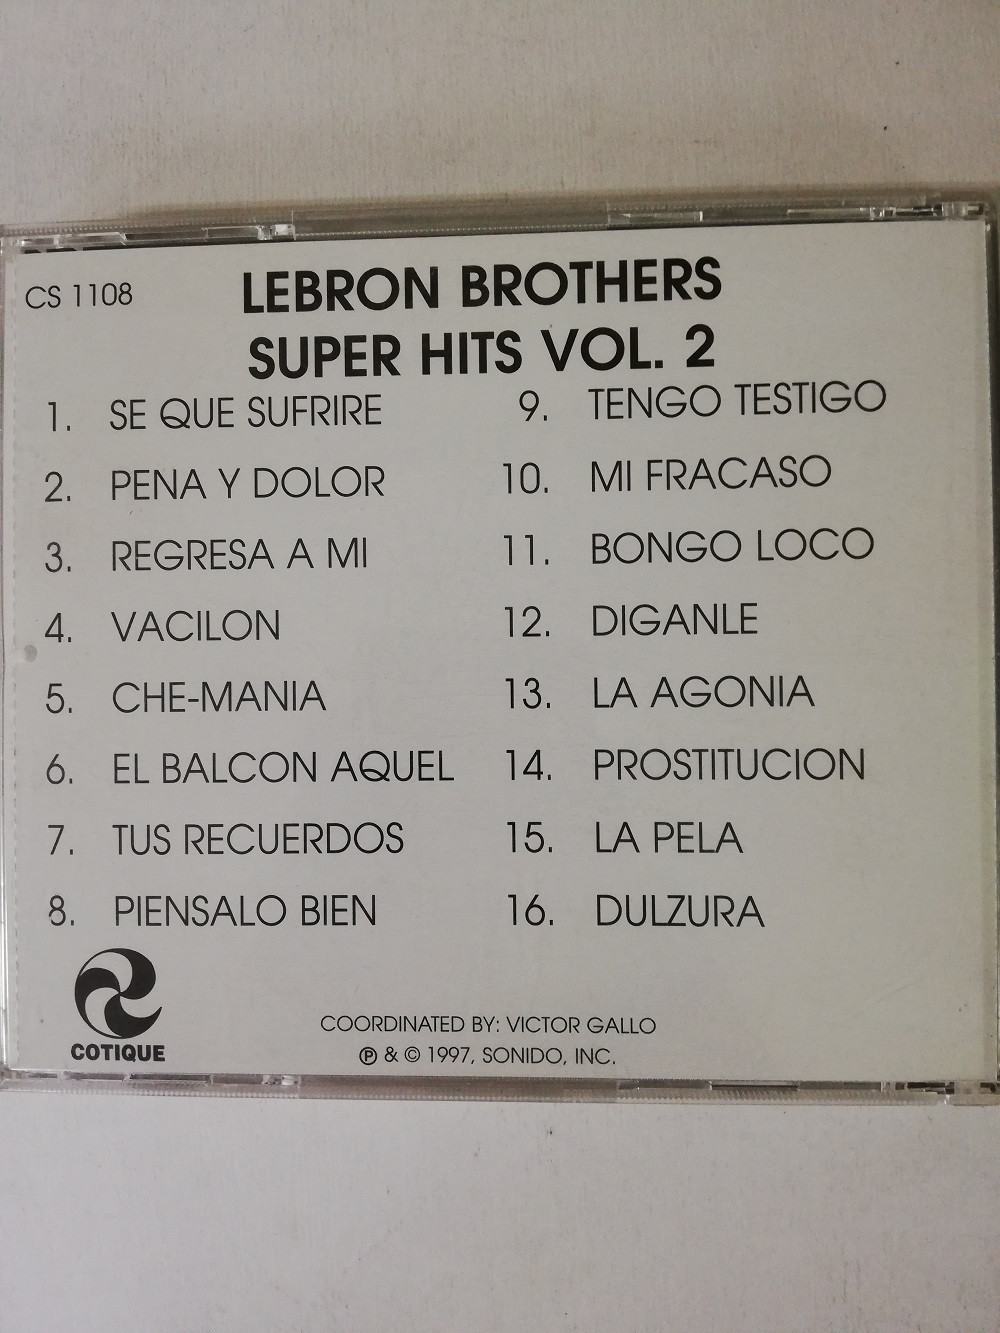 Imagen CD LEBRON BROTHERS - SUPER HITS VOL. 2 2